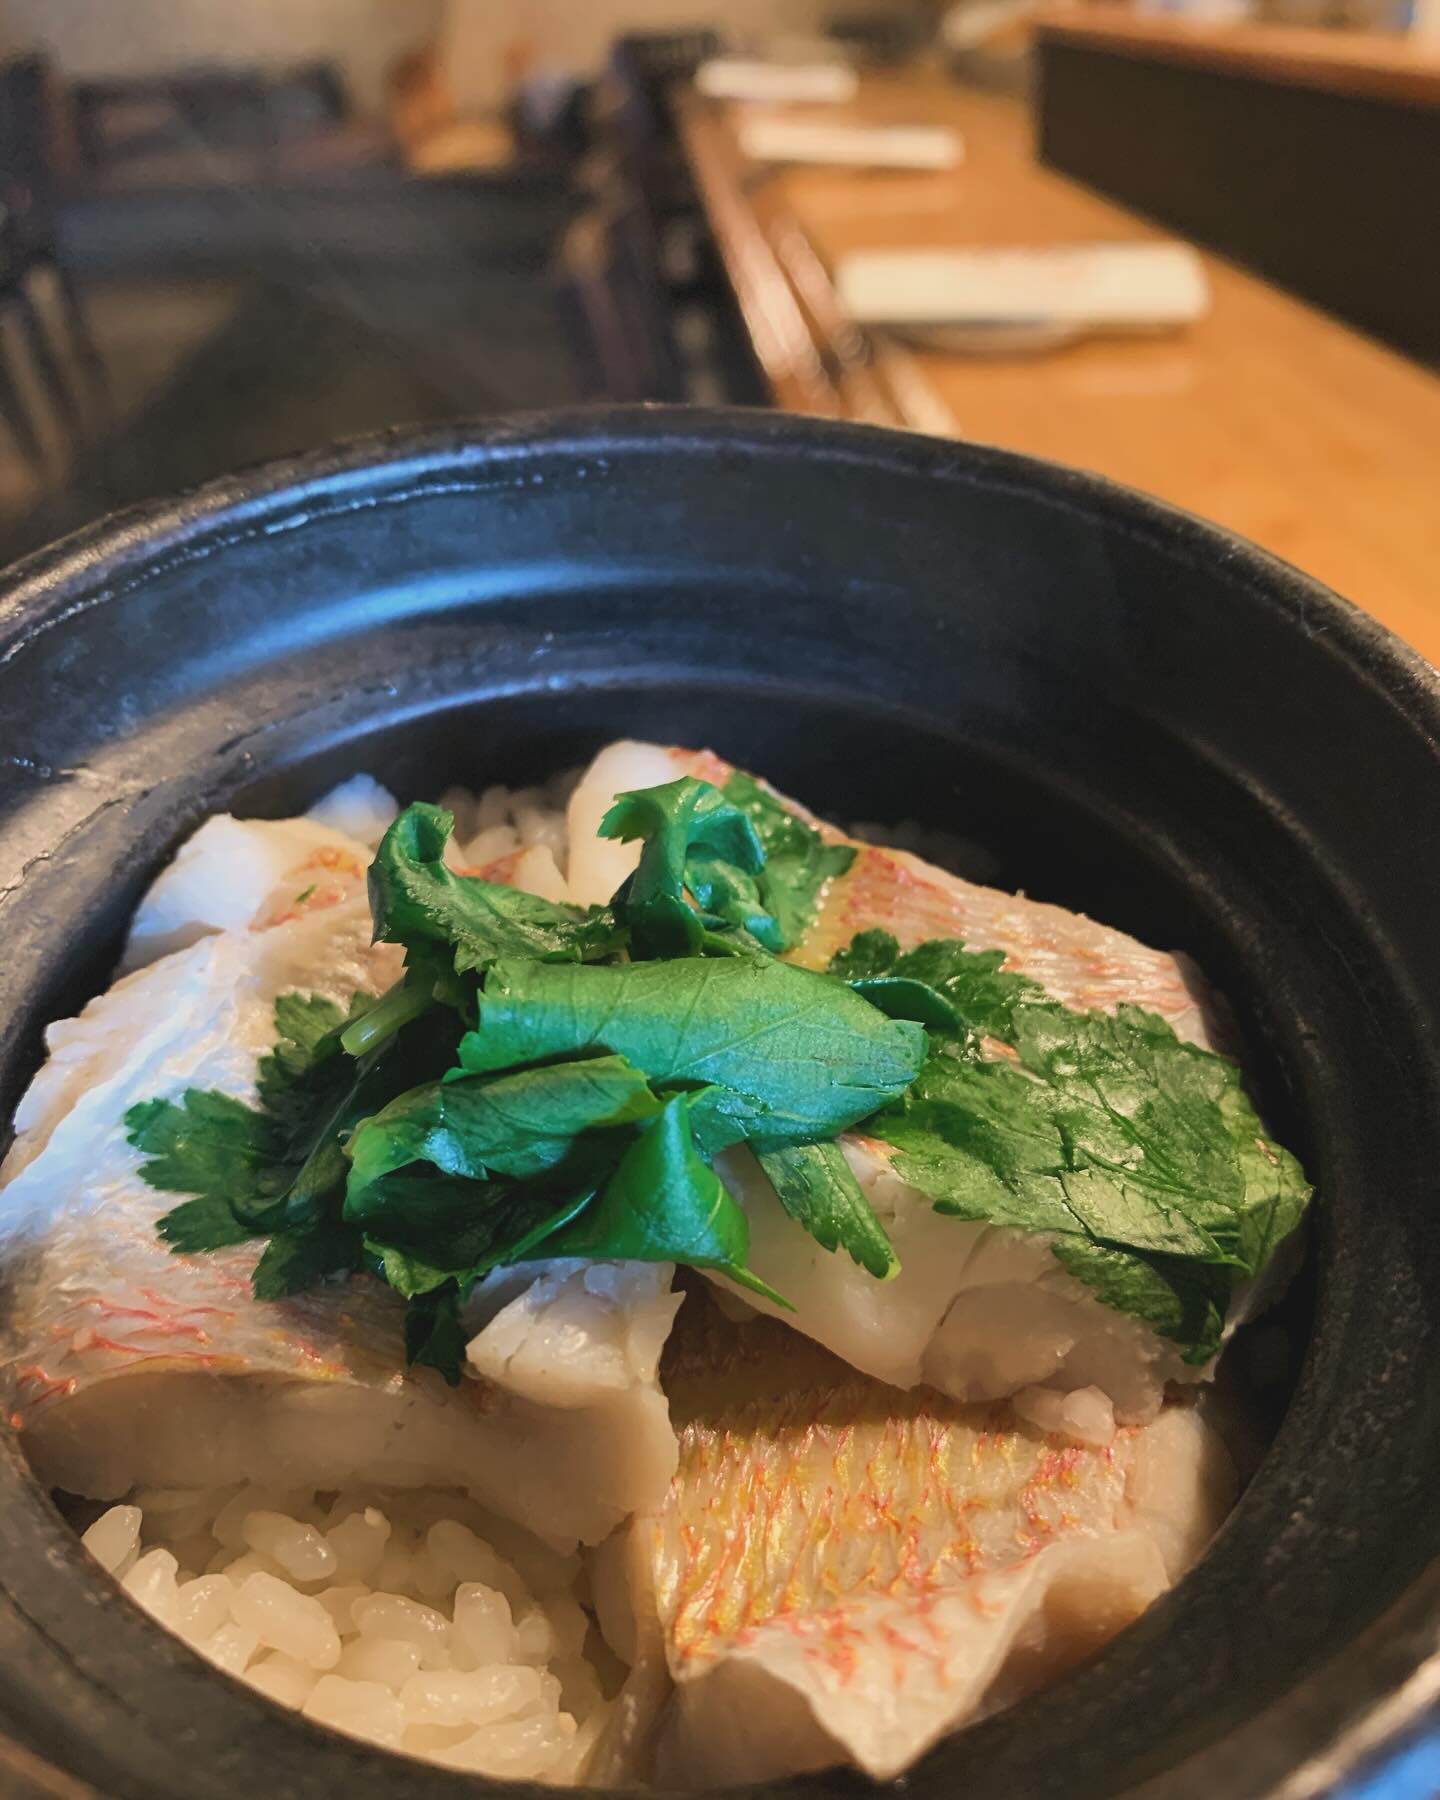 長崎から届いた連子鯛を丸々1匹を贅沢に使って炊き込みご飯作りました️
連子鯛の香りが強く、ご飯全体に美味しい連子鯛を感じられて幸せな料理間違えなしです
 #